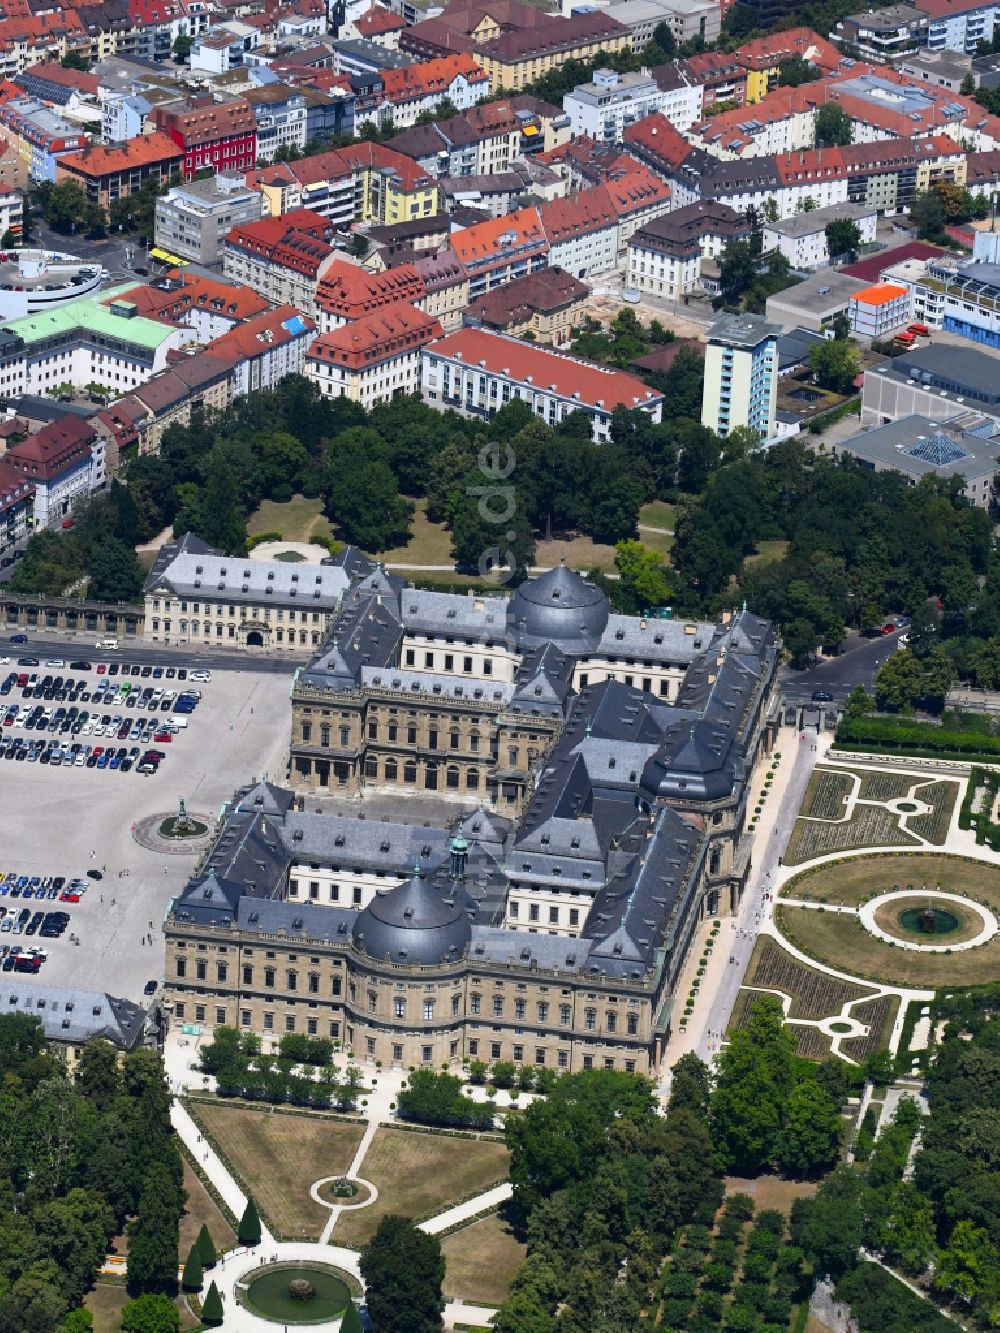 Luftbild Würzburg - Schloss Residenz Würzburg in Würzburg im Bundesland Bayern, Deutschland